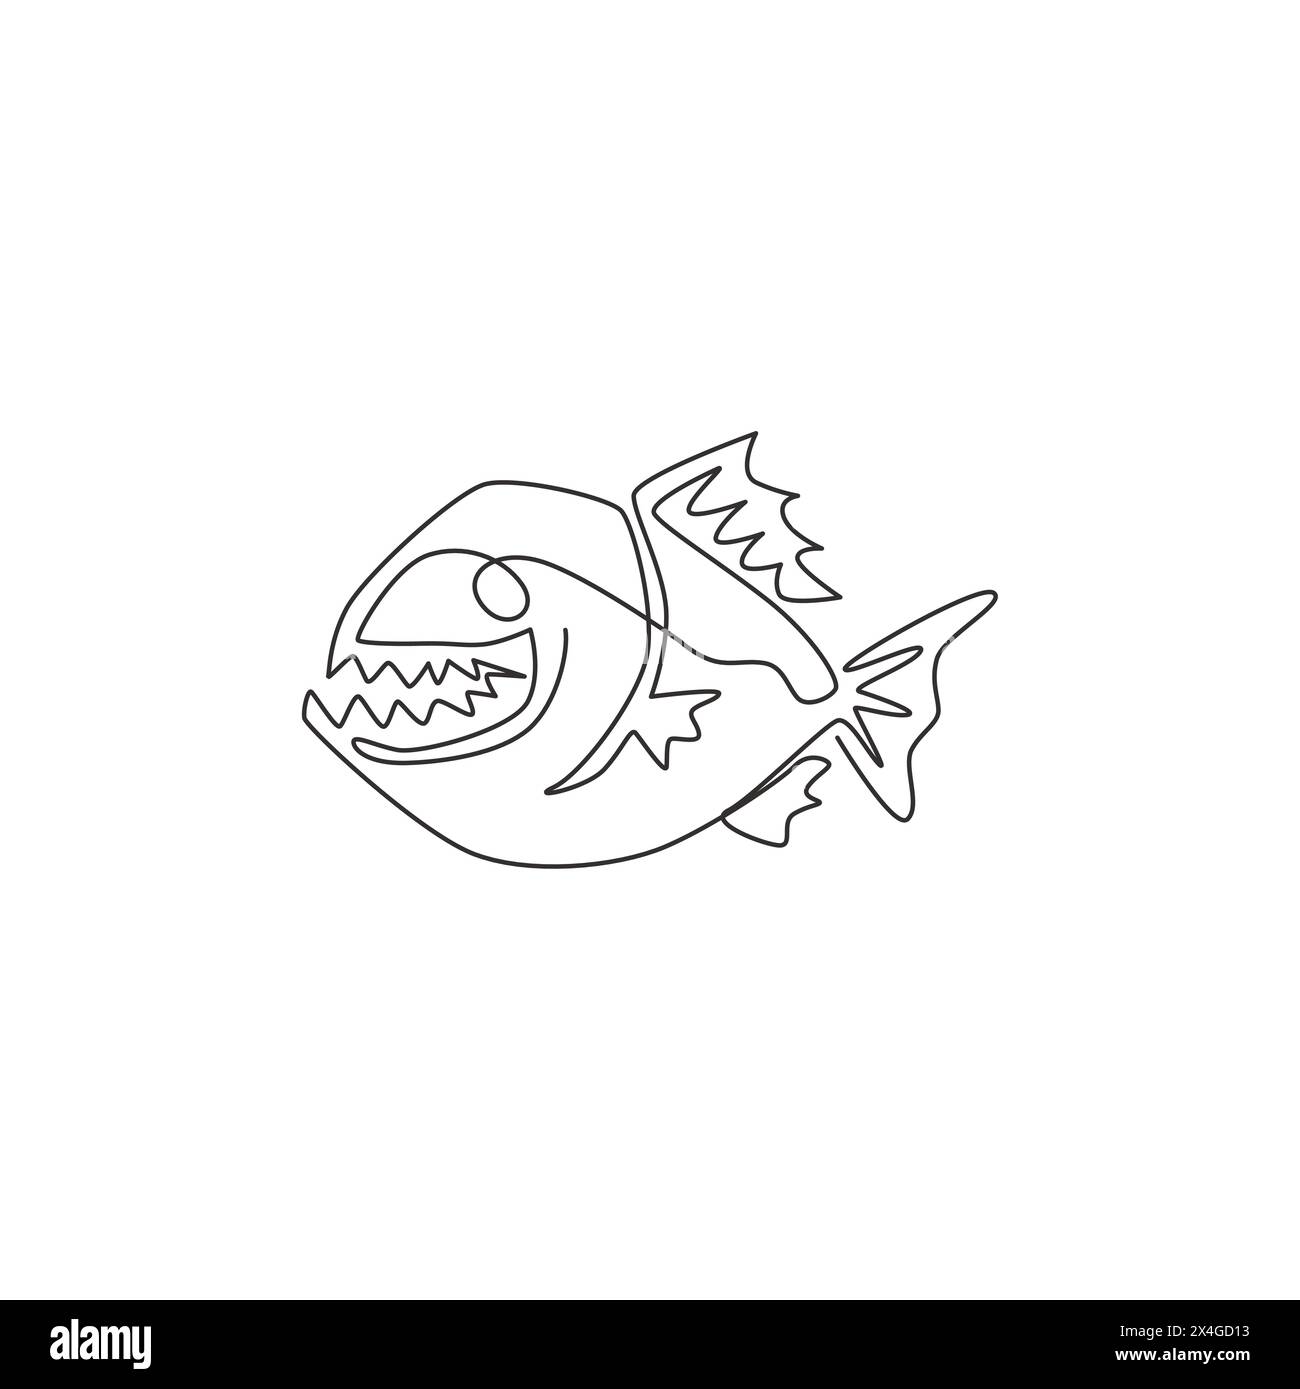 Un dessin simple ligne de piranha en colère pour l'identité du logo. Concept de mascotte de poisson de rivière Amazone pour icône de créature monstre. Dessin graphique en ligne continue d Illustration de Vecteur